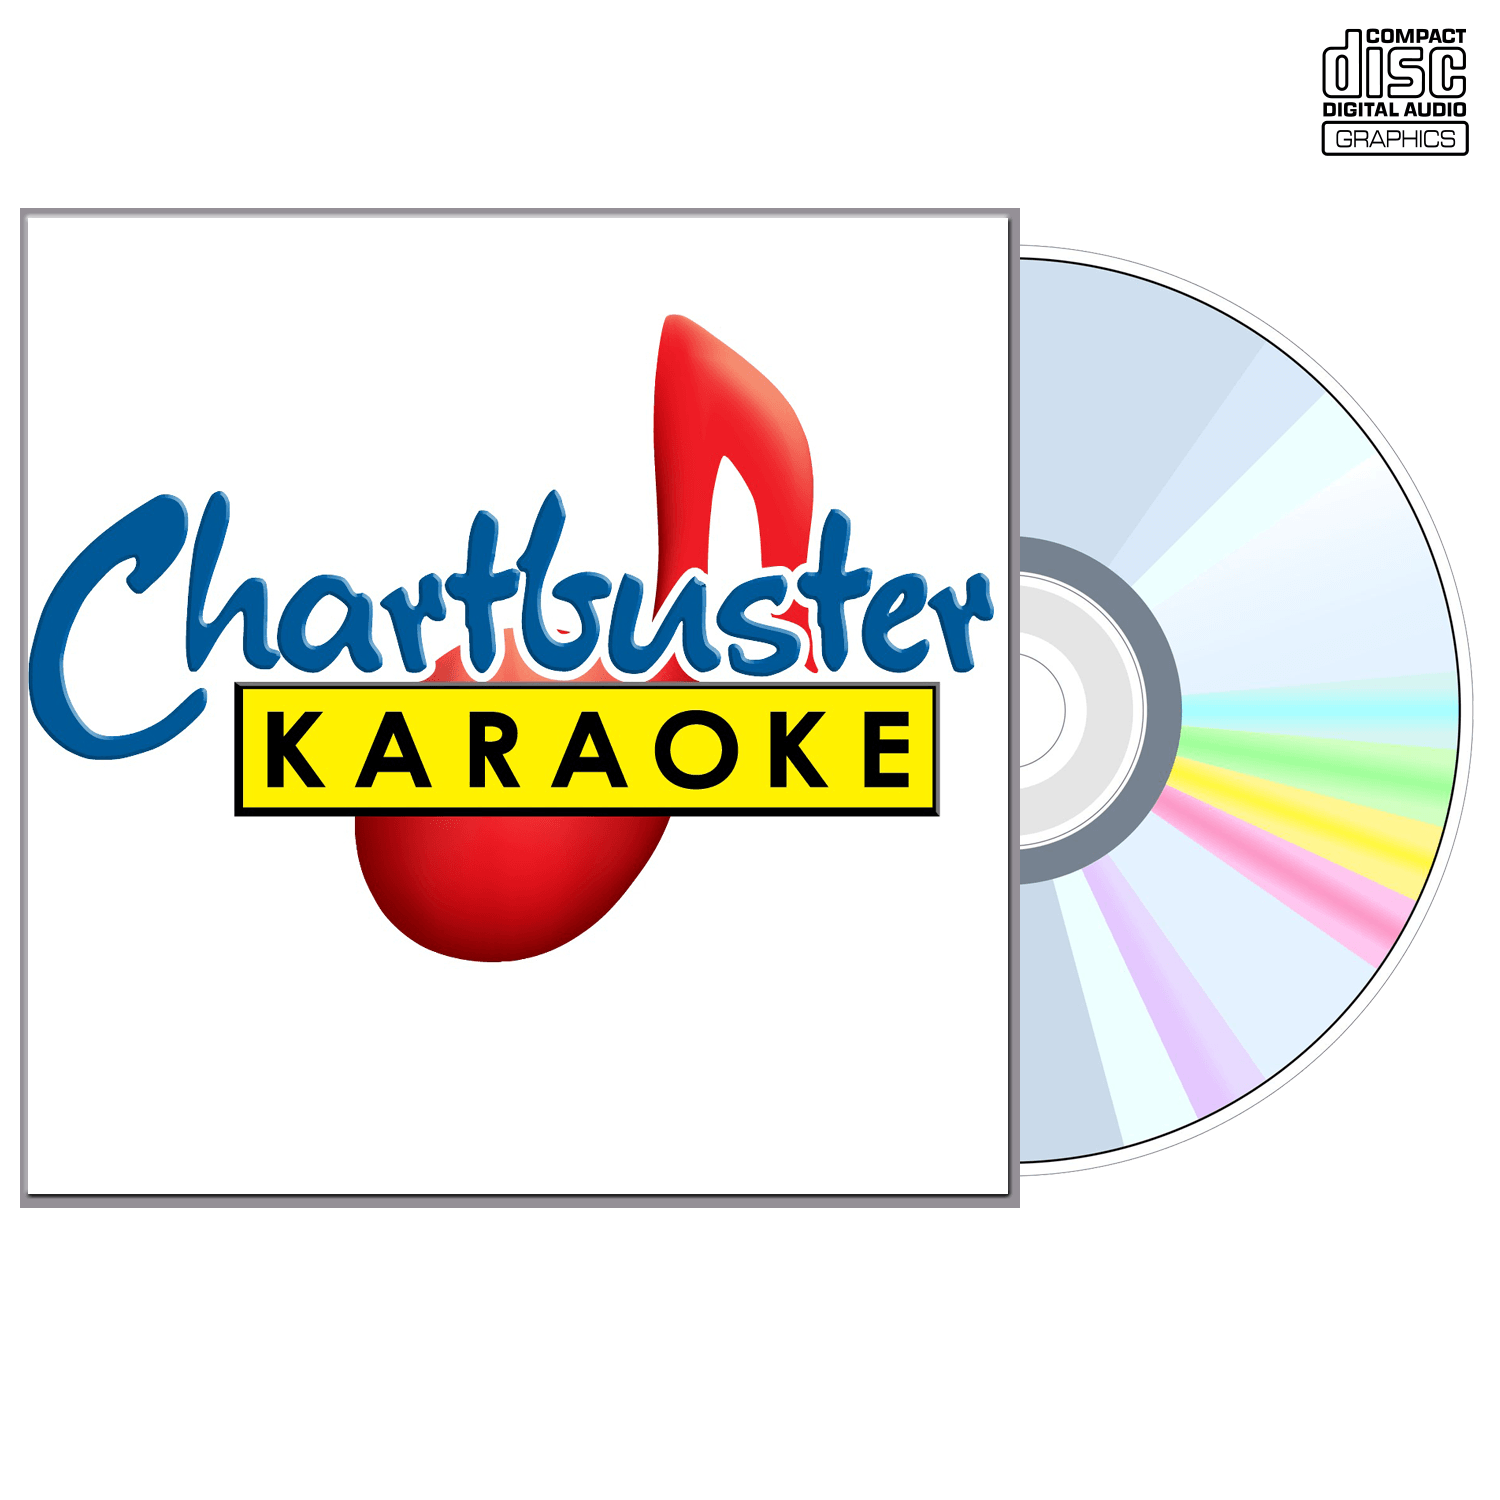 Merle Haggard Vol 1 - CD+G - Chartbuster Karaoke - Karaoke Home Entertainment